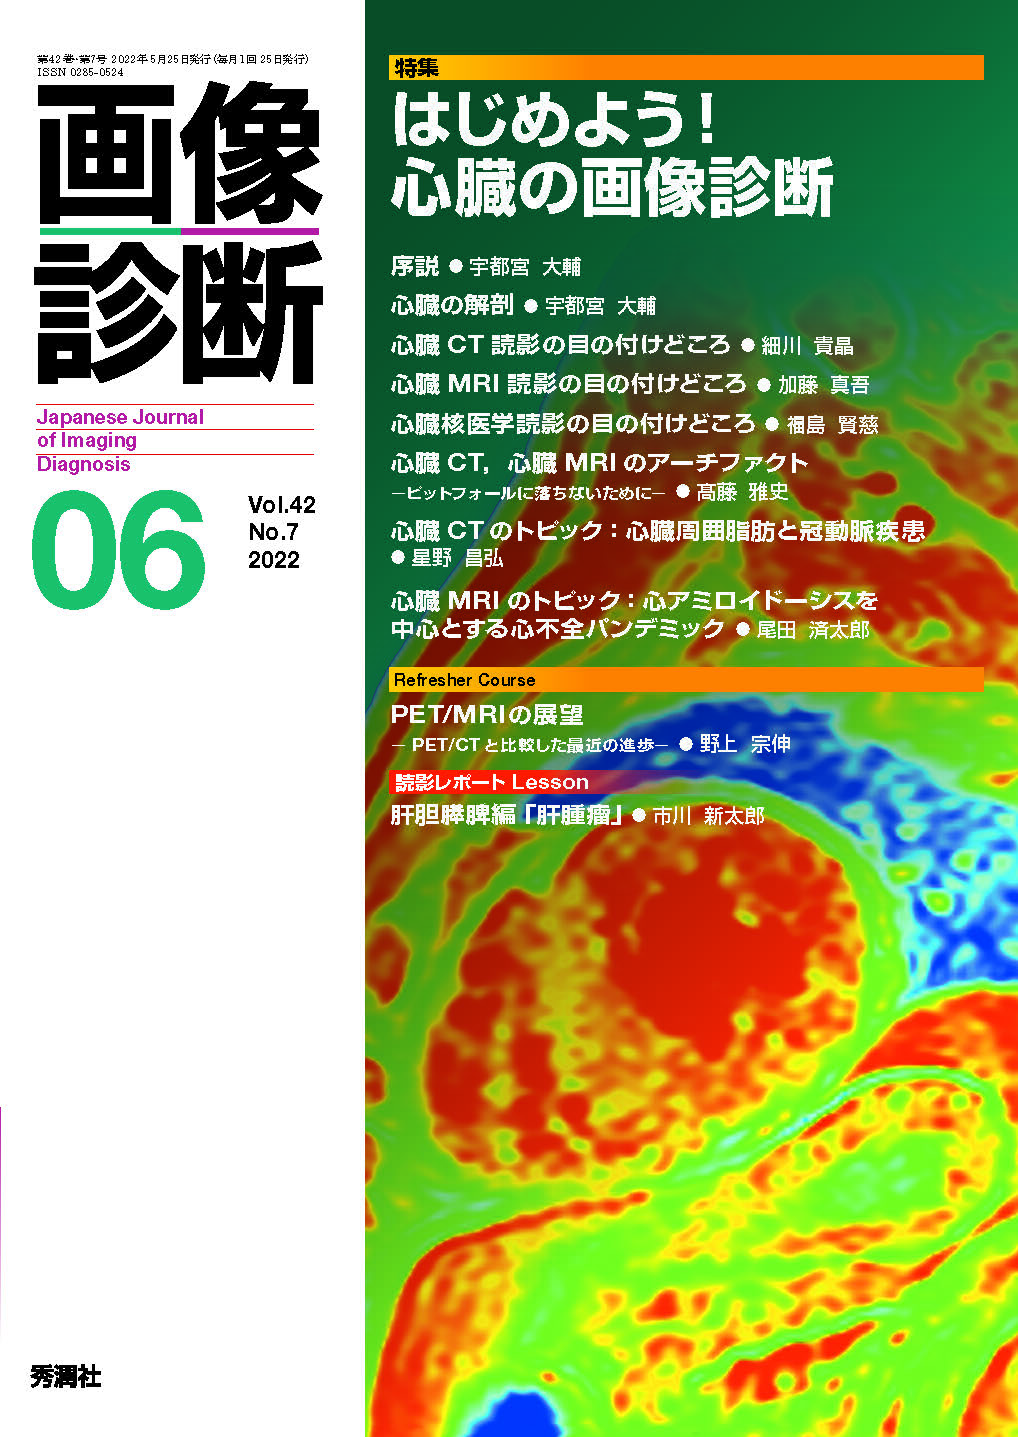 画像診断 Vol.42 No.7（2022年6月号）【電子版】 | 医書.jp